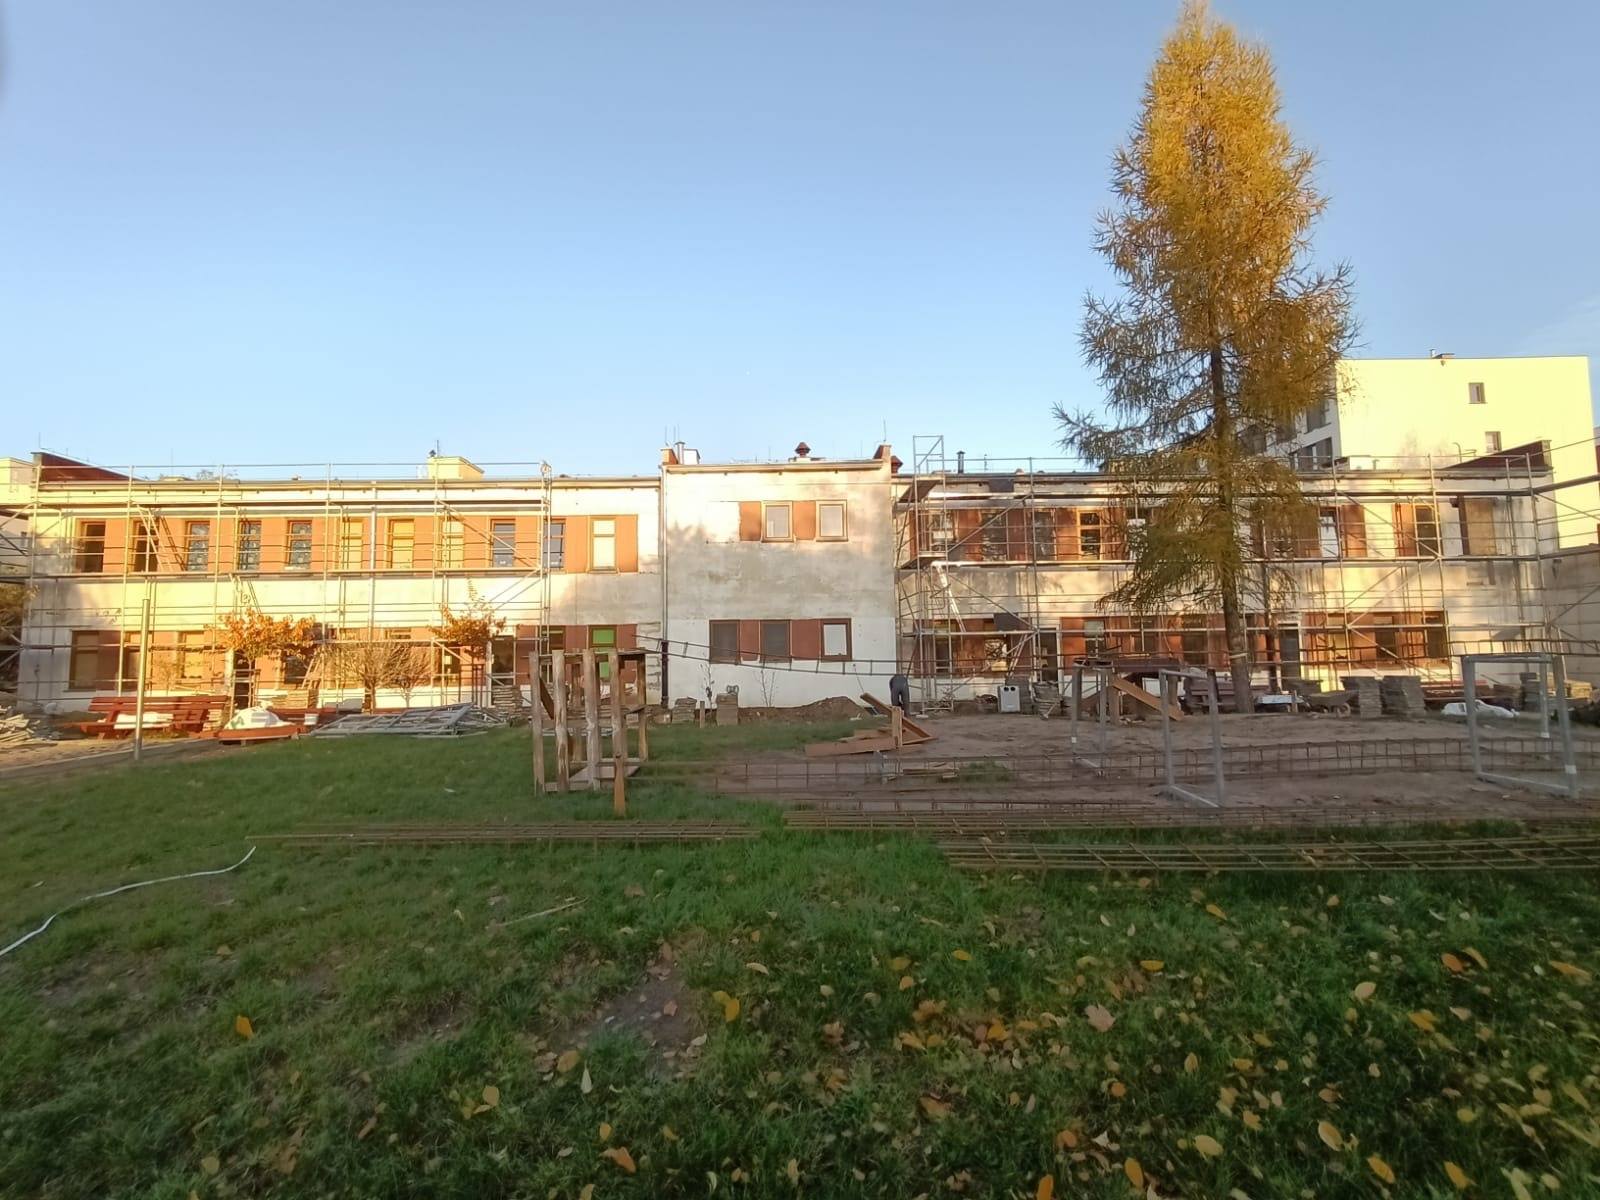 Odcinek 28 - przebudowa przedszkola nr 5 przy ul. Dźwirzyńskiej 